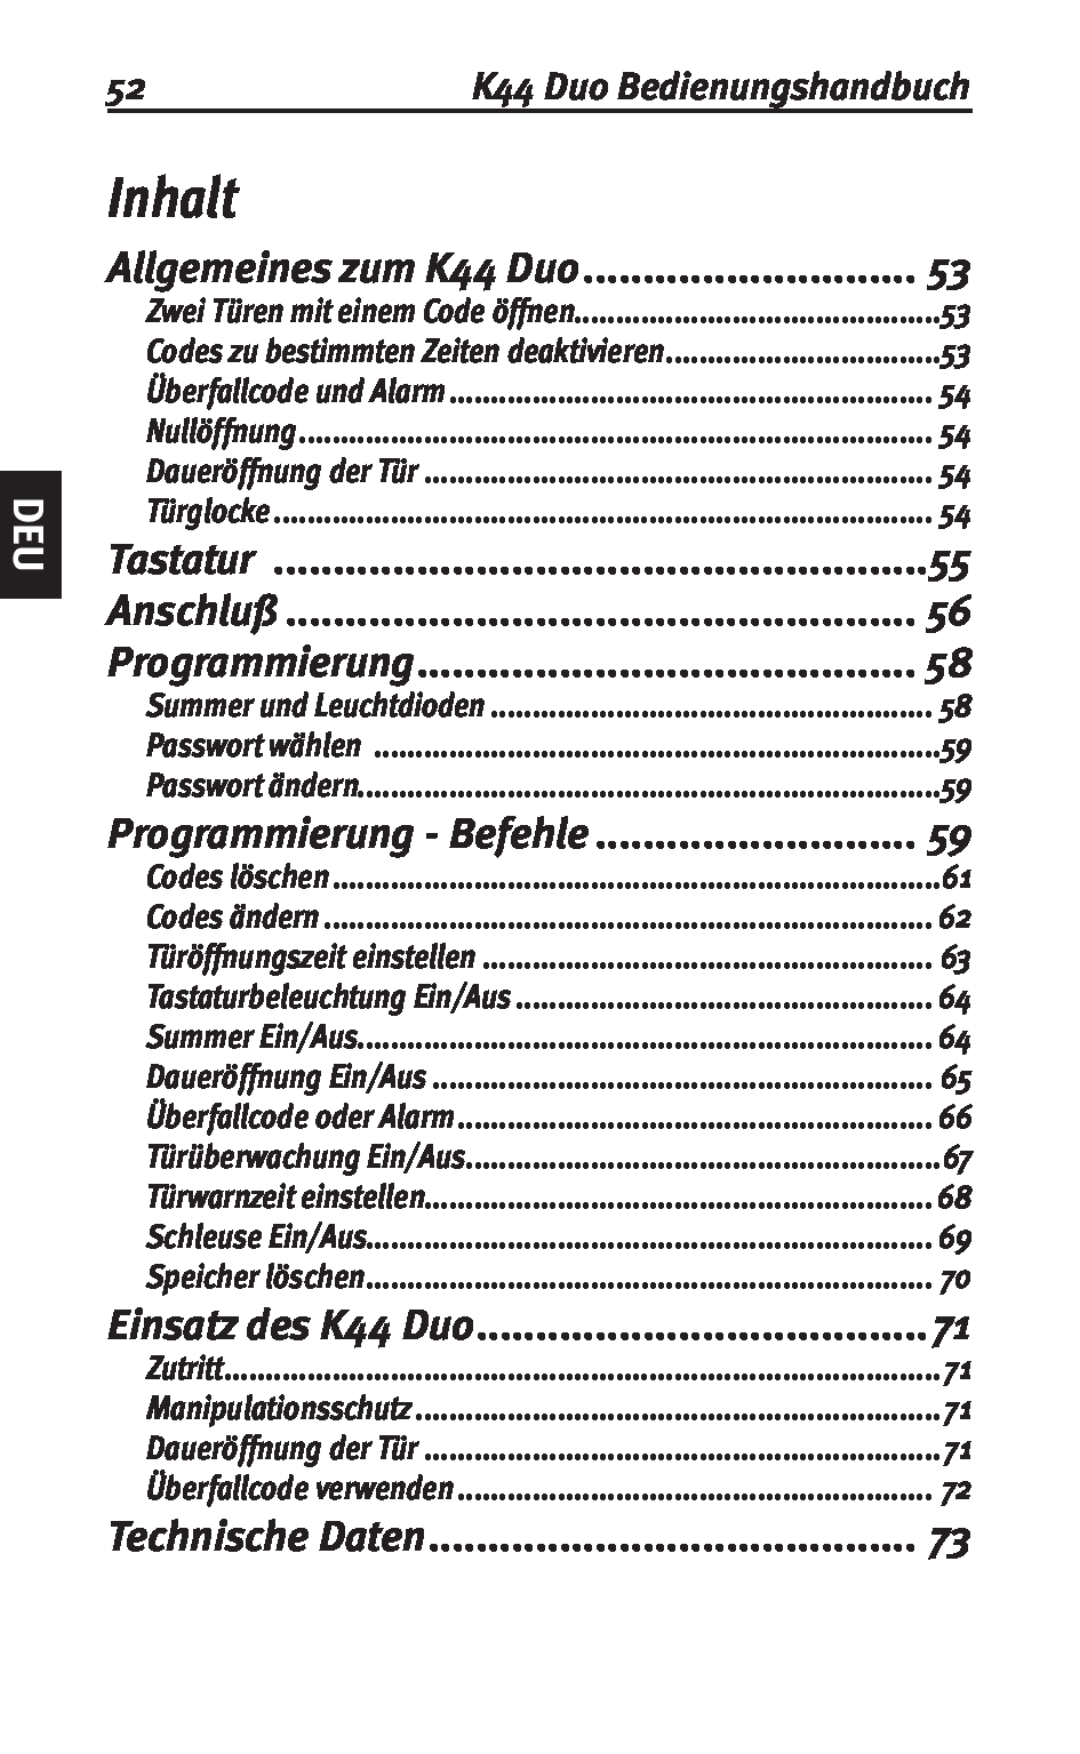 Siemens user manual Inhalt, Tastatur, Anschluß, Technische Daten, Allgemeines zum K44 Duo, Programmierung - Befehle 